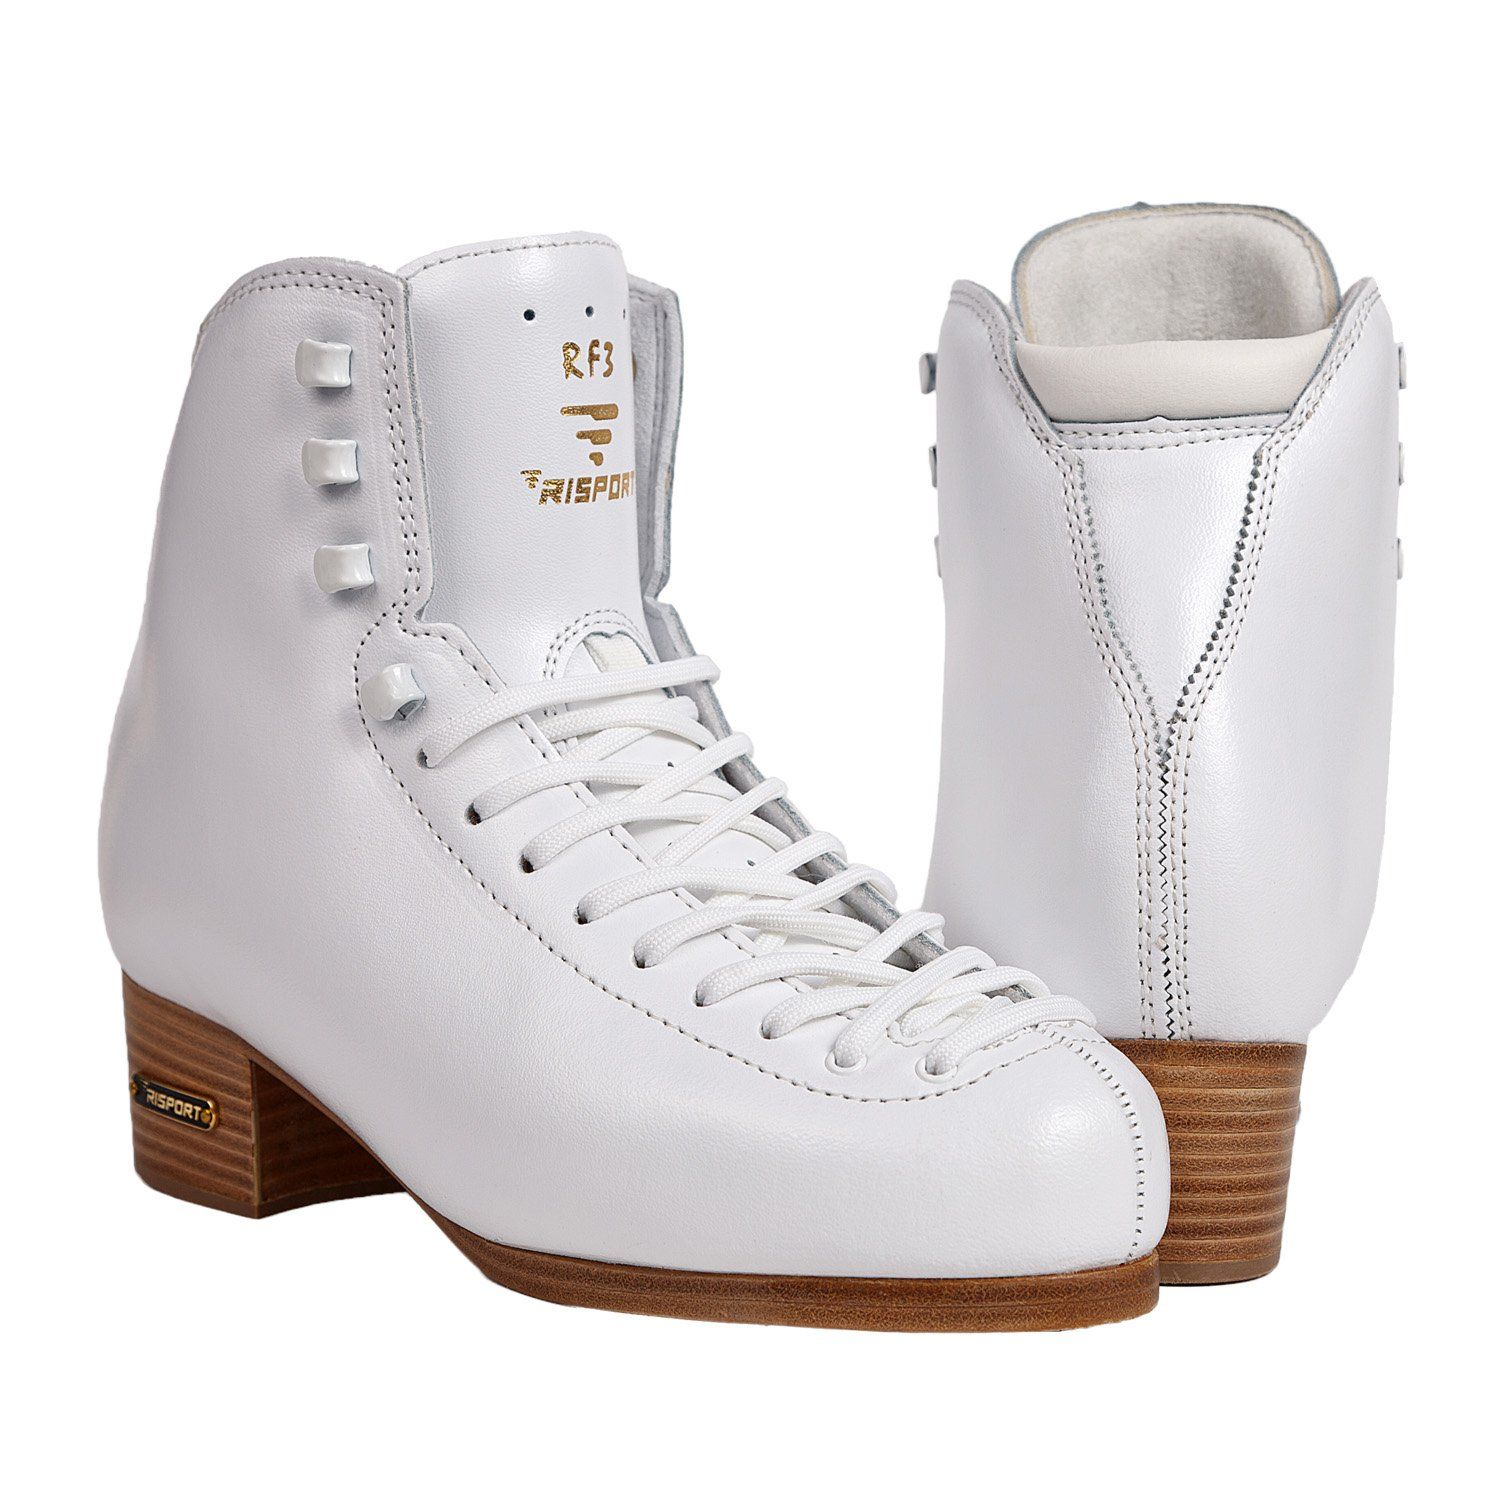 Фигурные ботинки Risport RF3 (Белые)